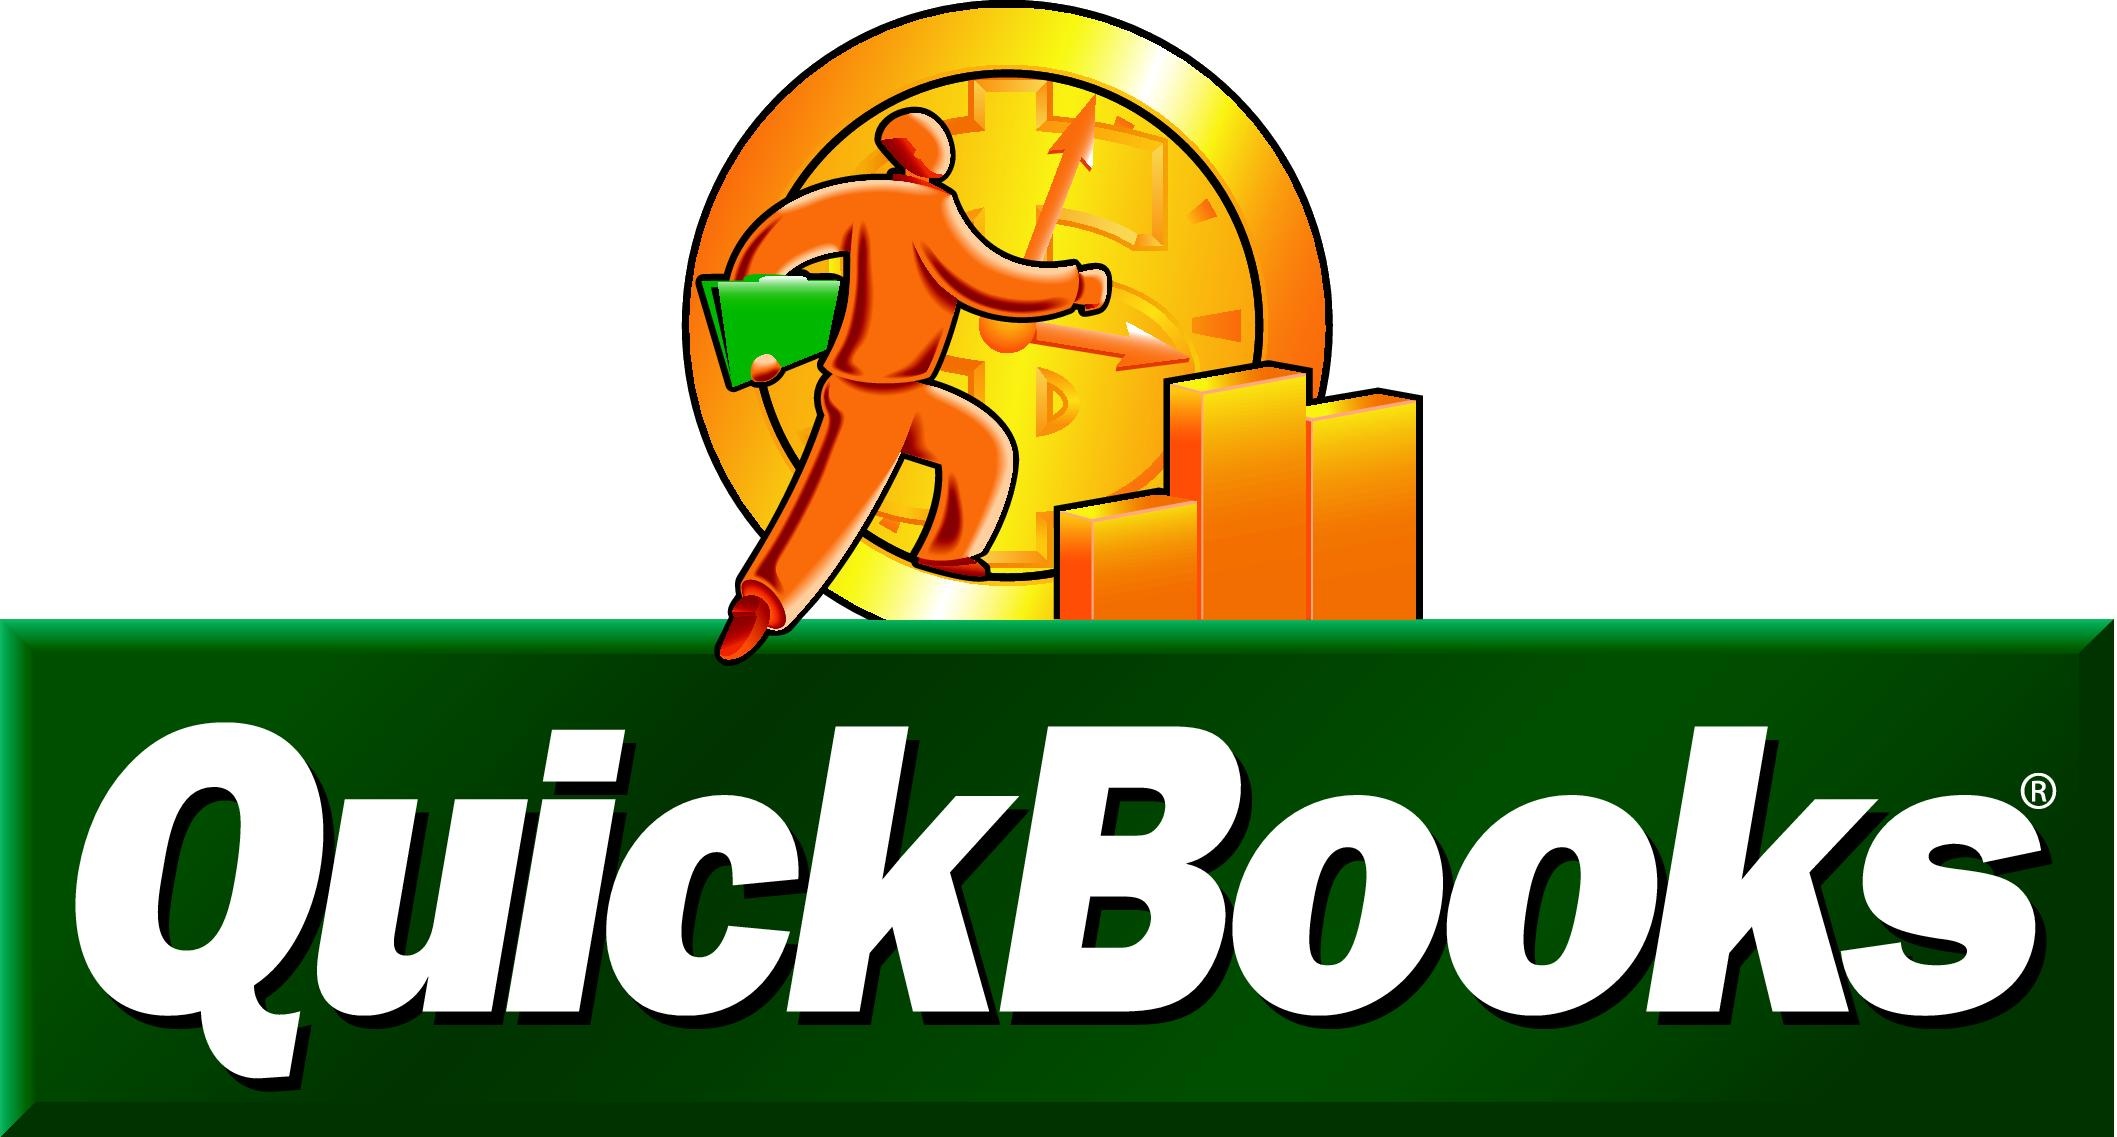 quickbooks desktop trial